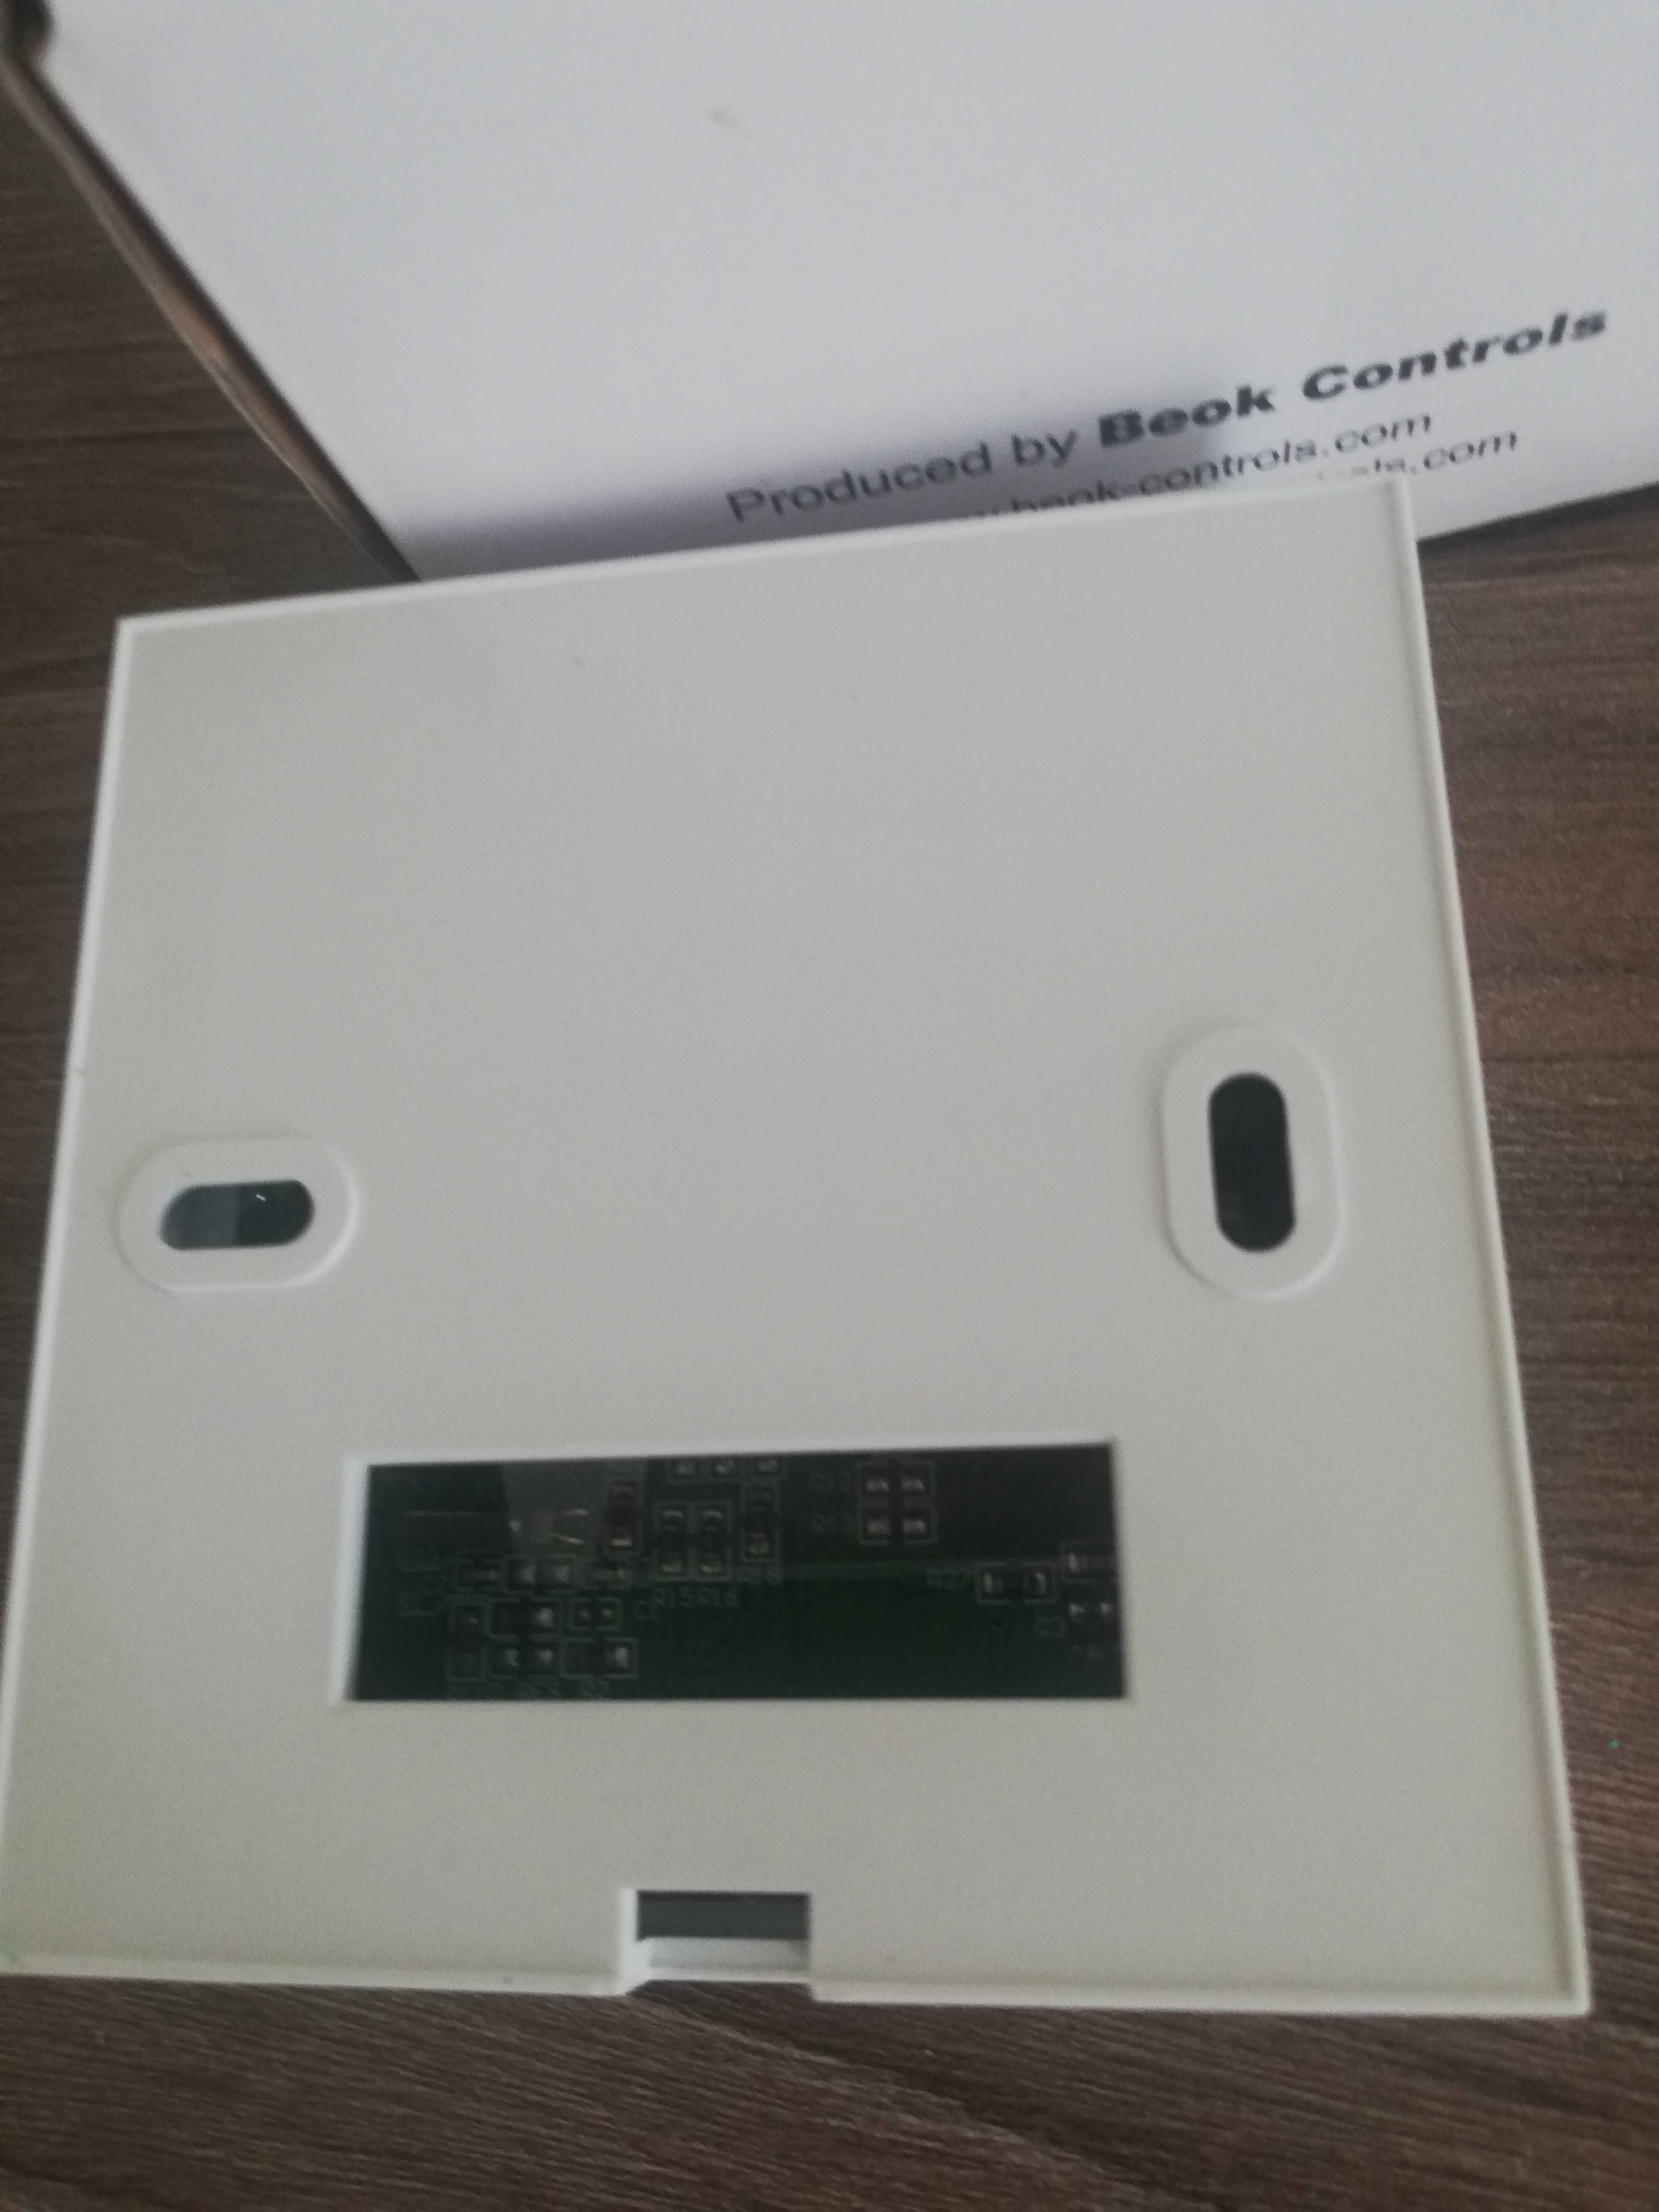 Programowalny termostat kotła gazowego Beok BOT-313 WiFi